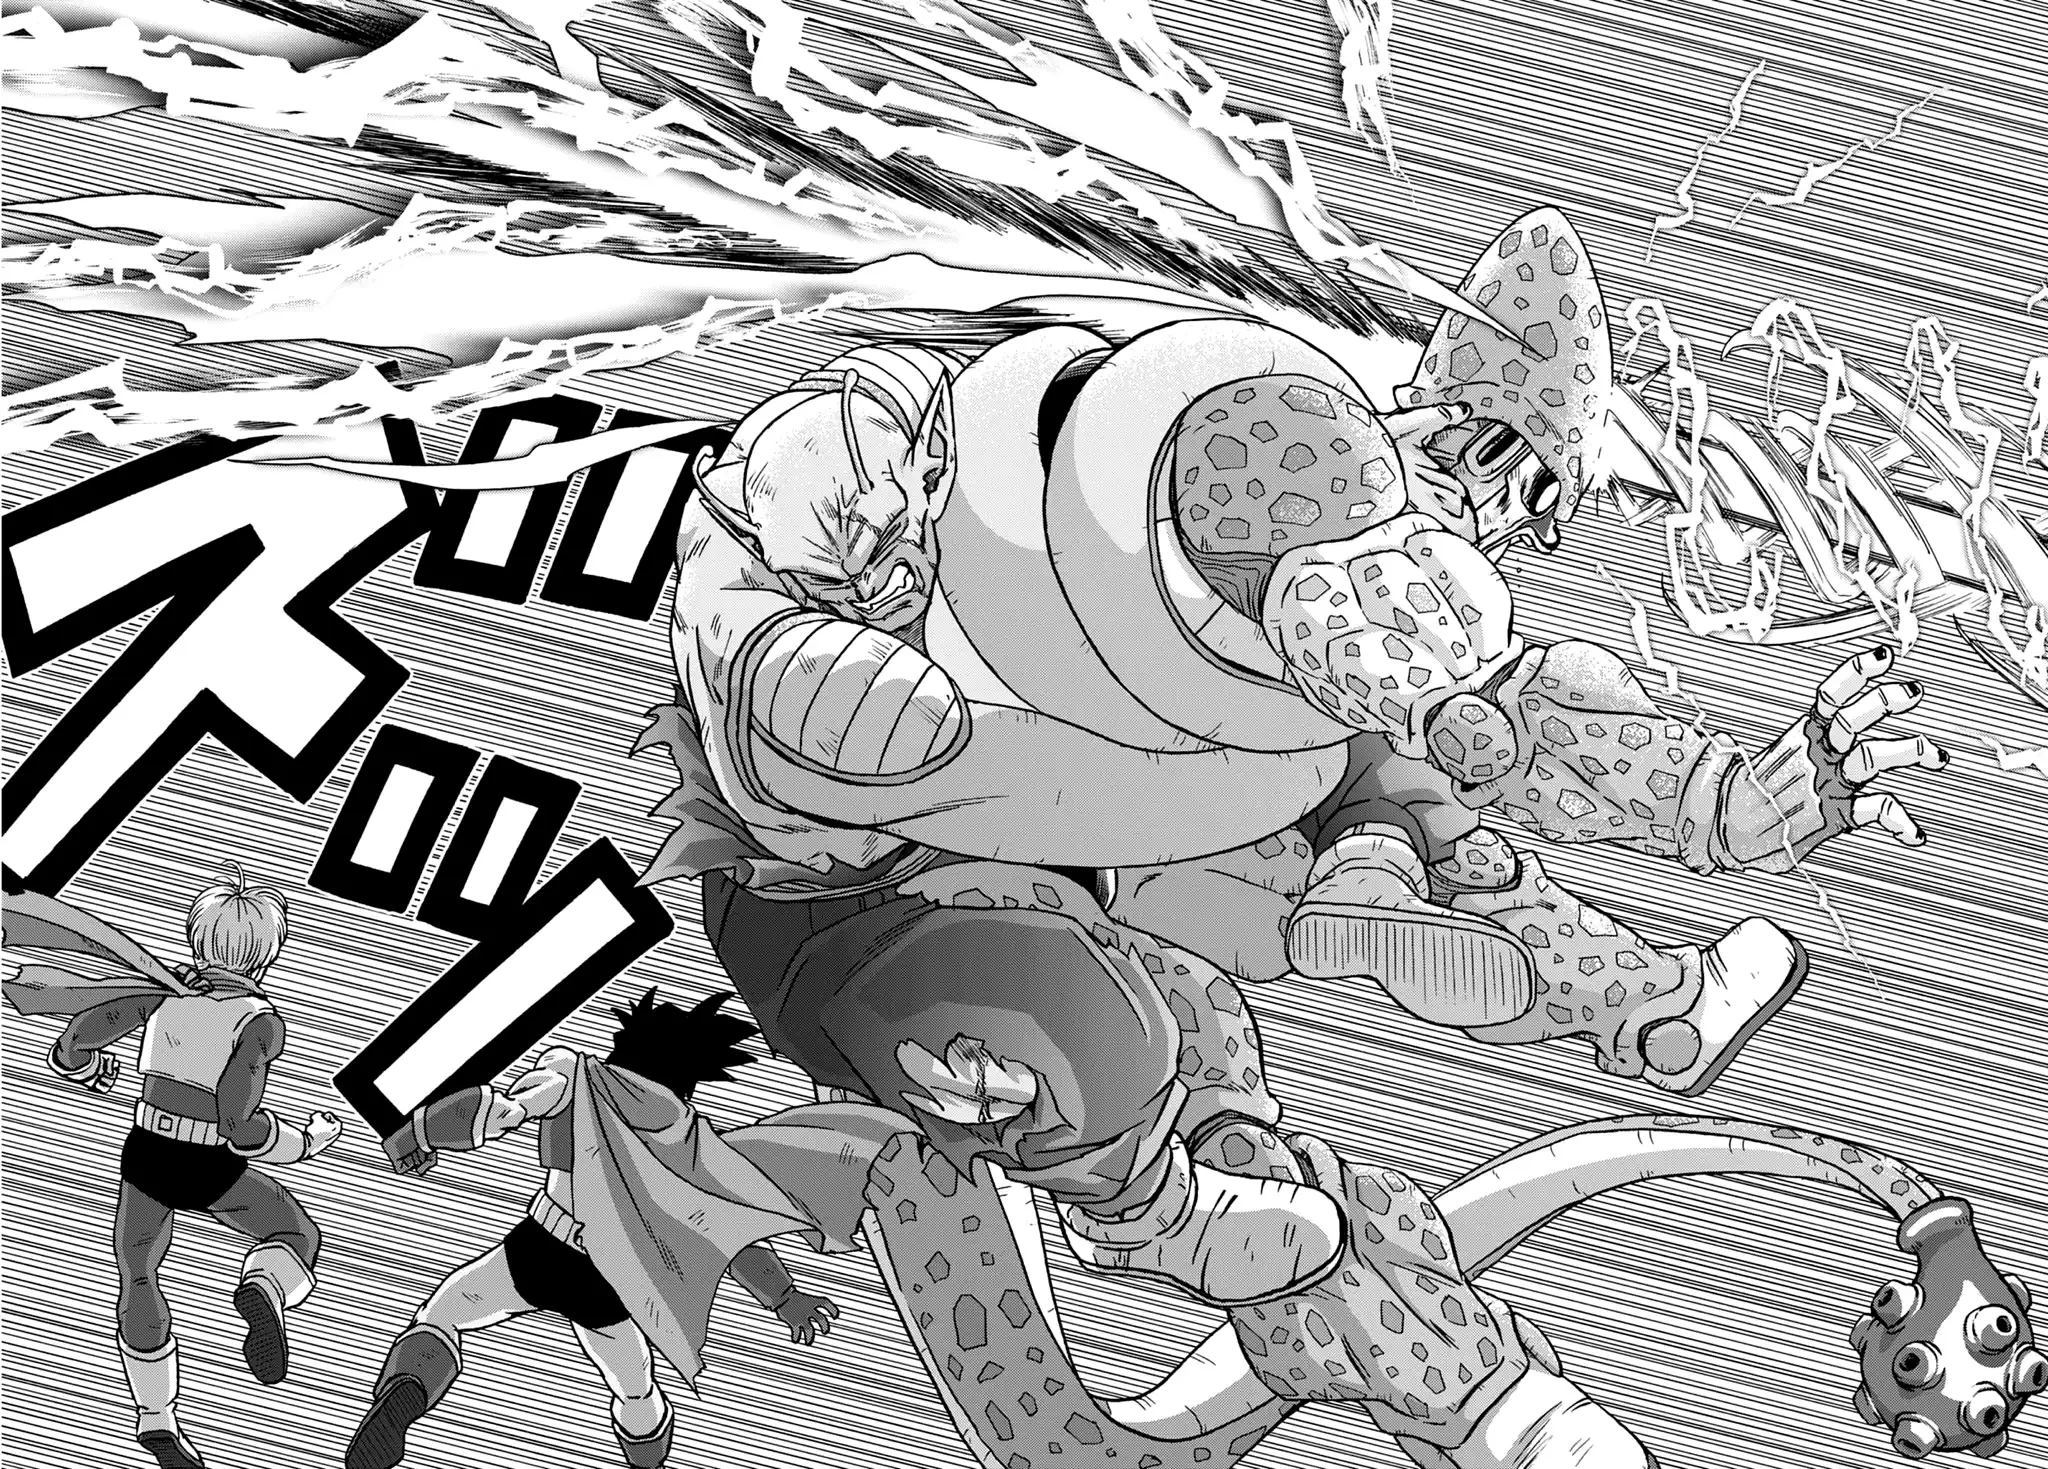 Dragon Ball Super Chapitre 100 : La fin de l'arc Super Hero